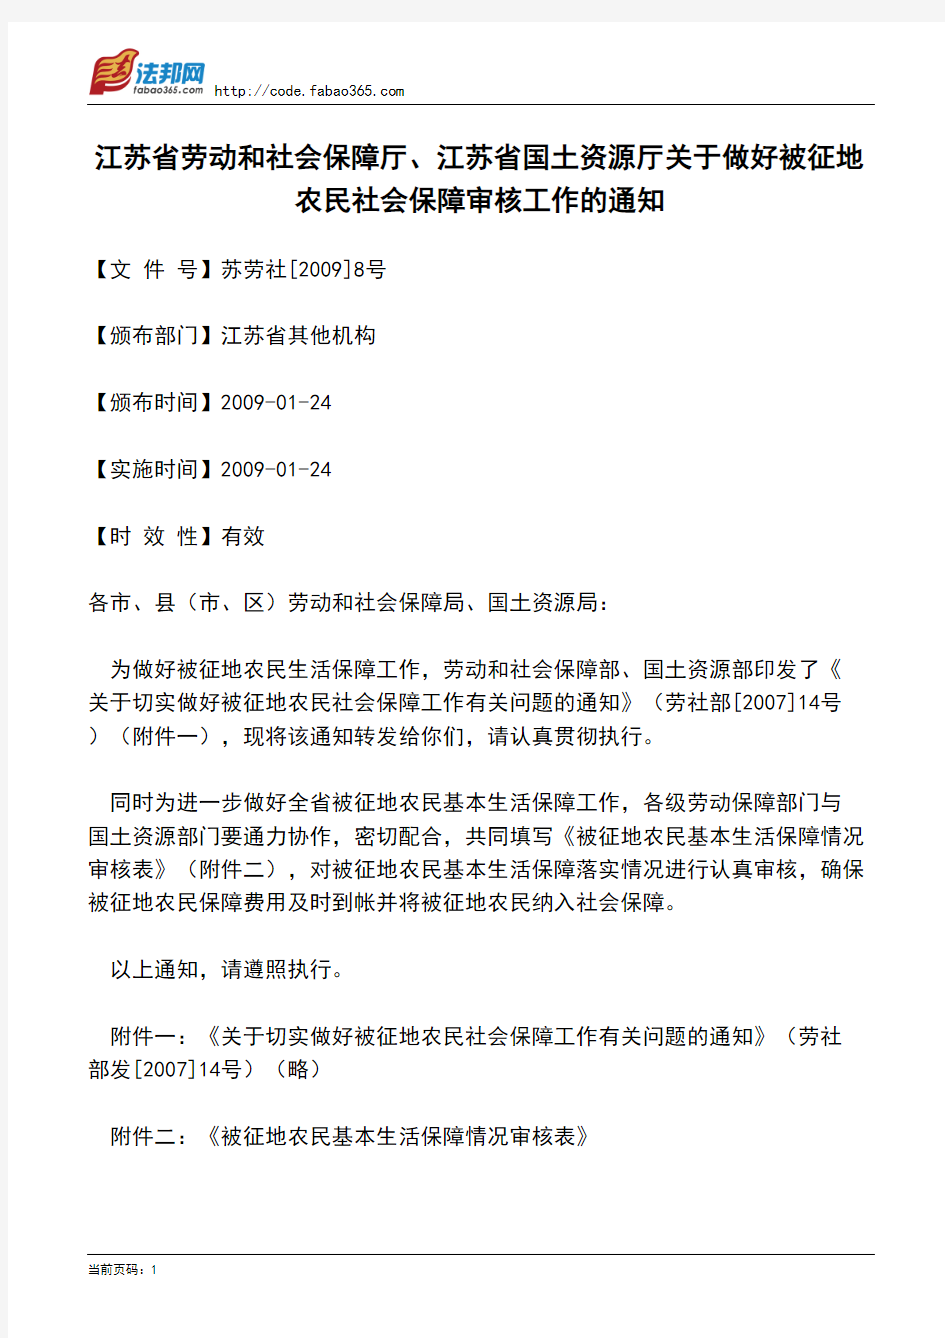 江苏省劳动和社会保障厅、江苏省国土资源厅关于做好被征地农民社会保障审核工作的通知